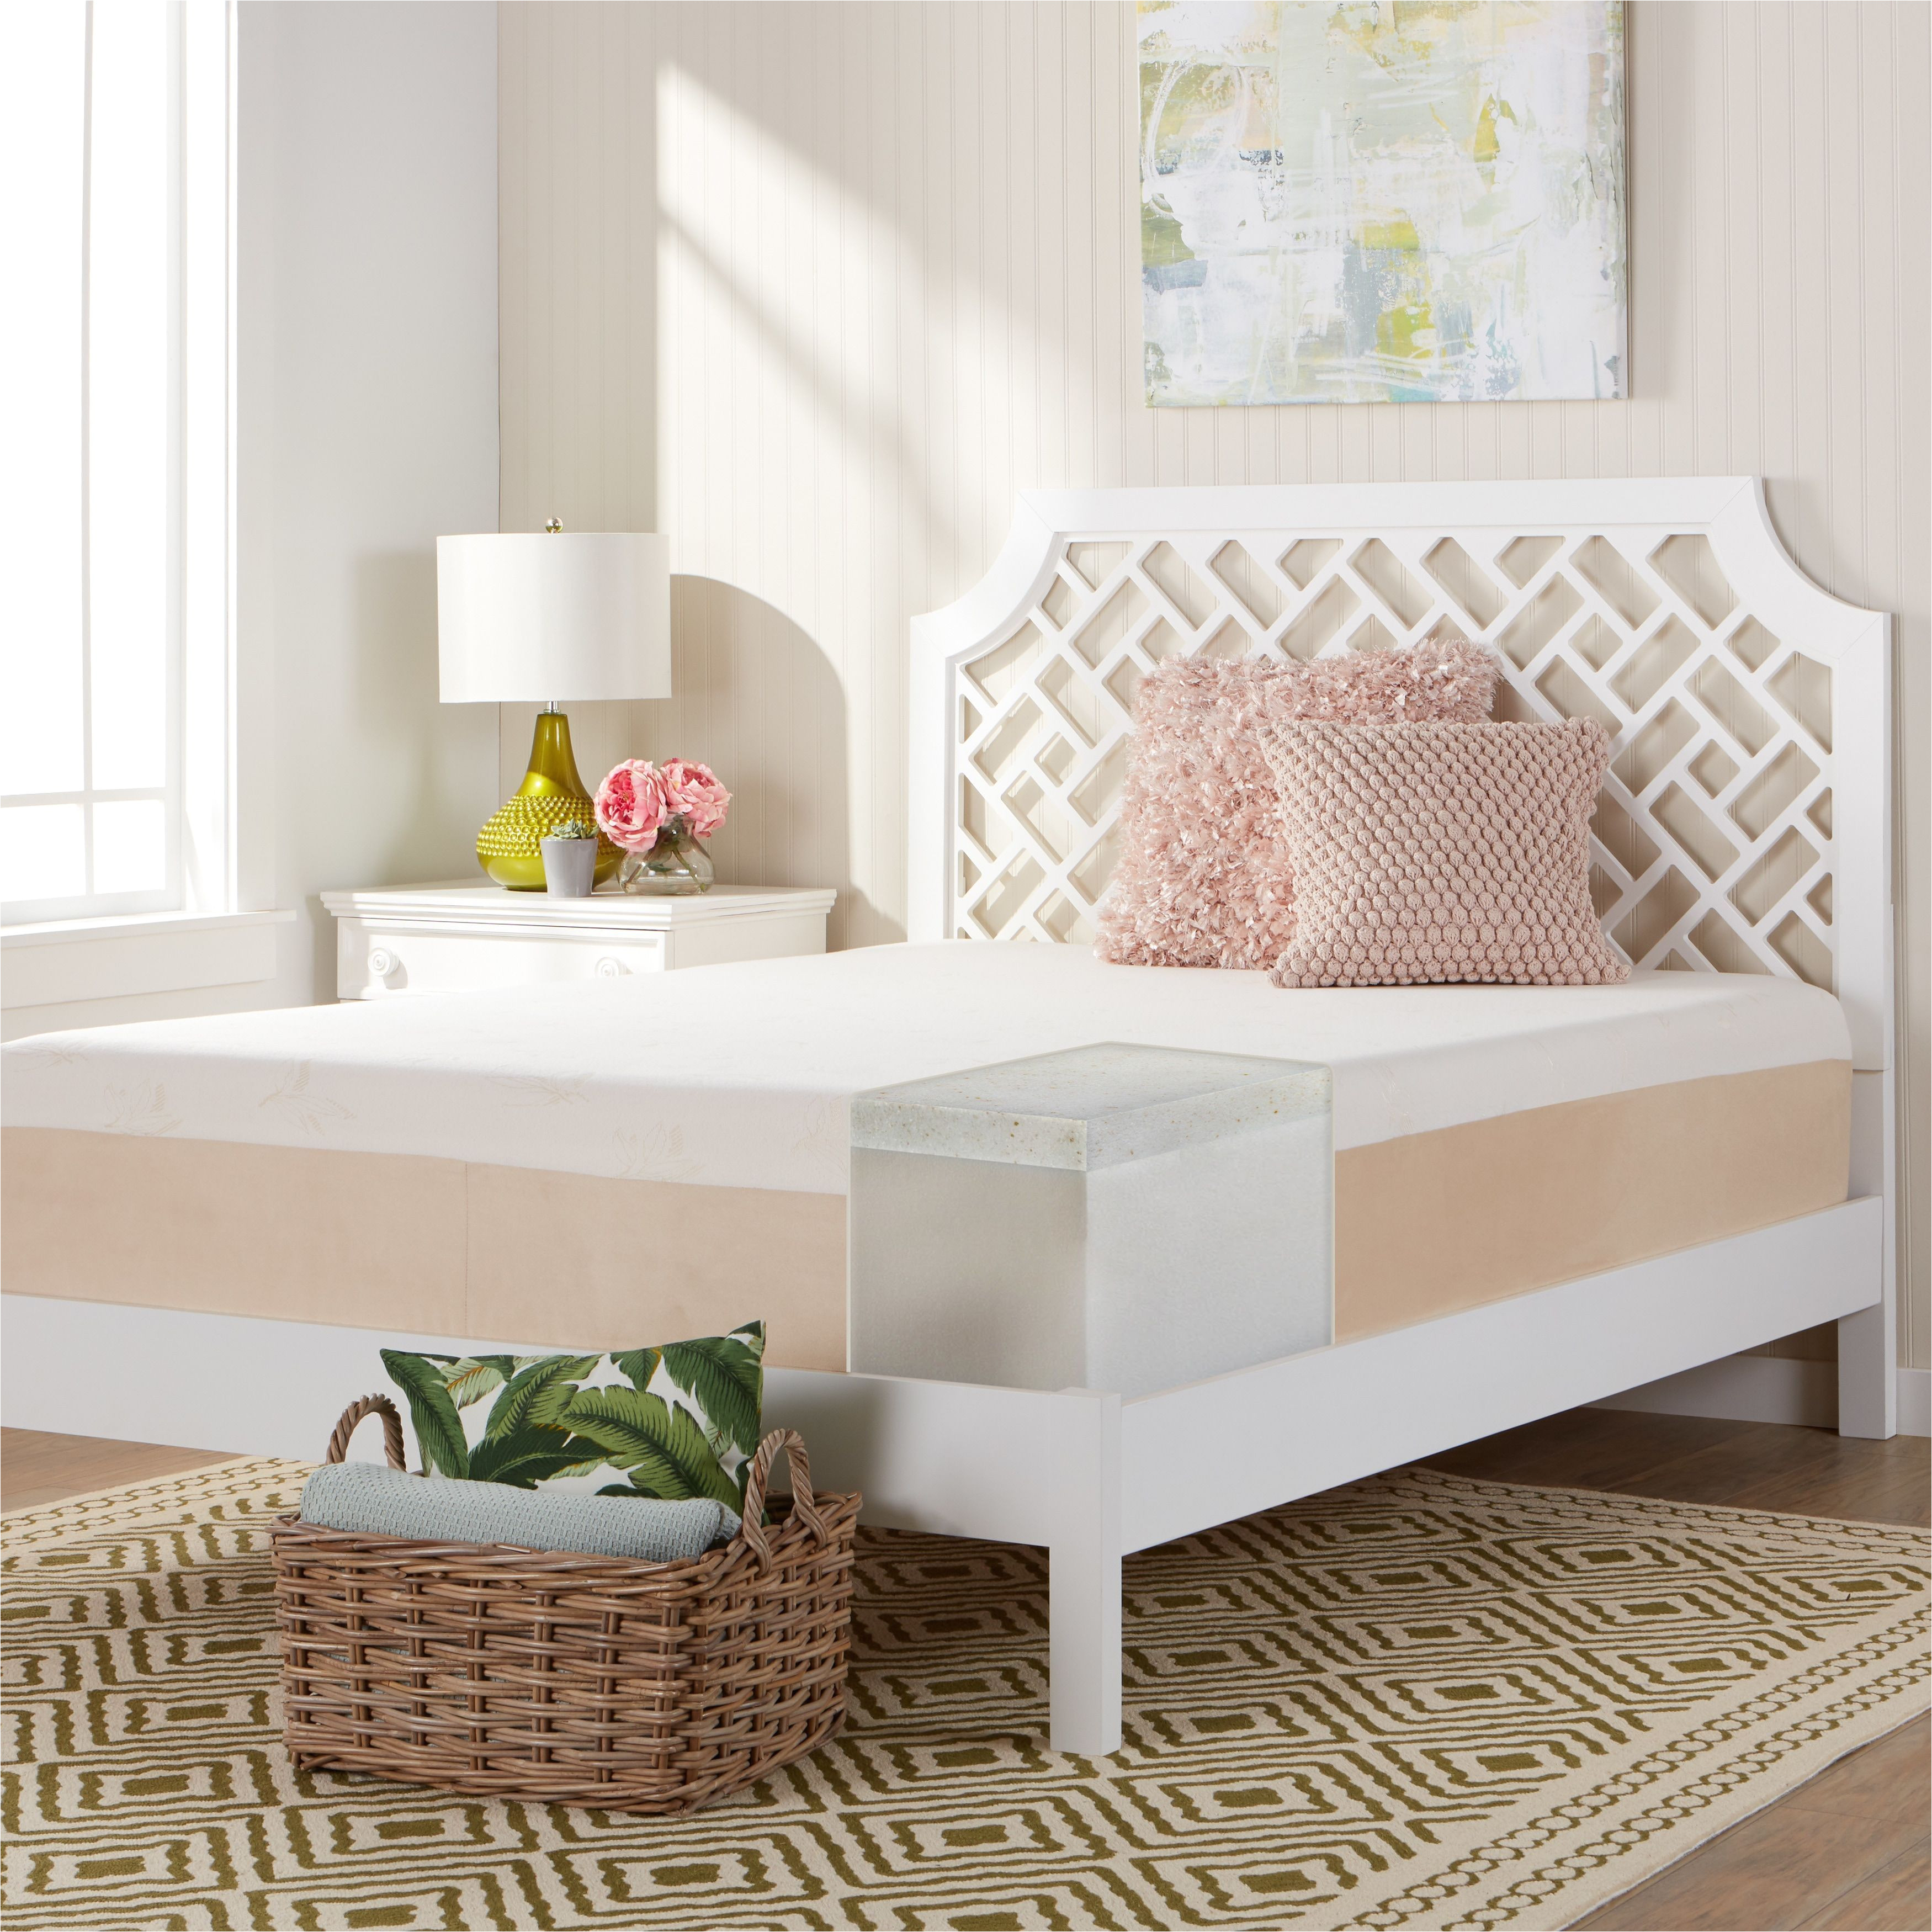 comfort dreams select a firmness 14 inch twin xl size copper brown gel memory foam mattress plush foammattress